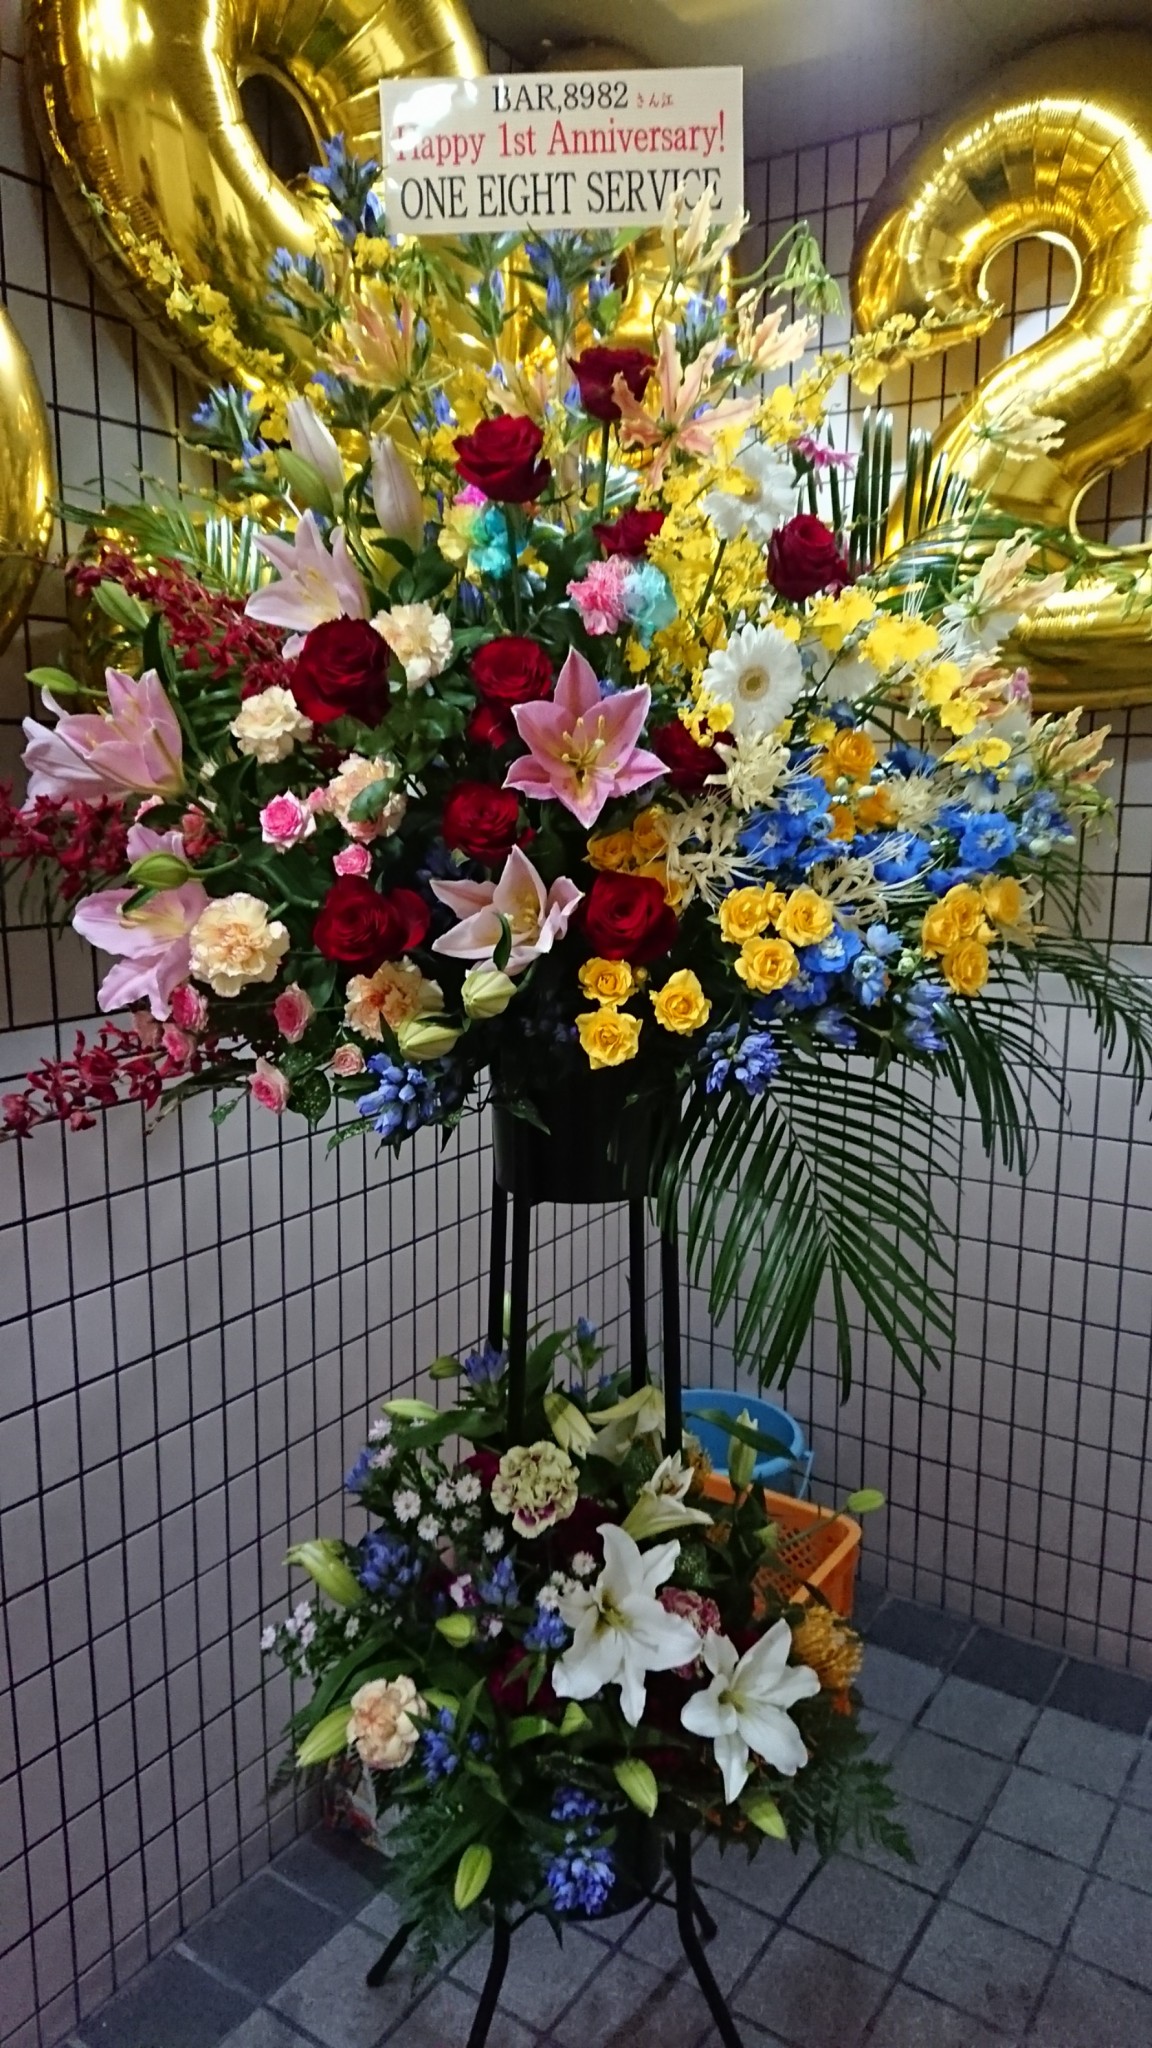 淀川区 十三本町のBARの一周年のお祝いスタンド花